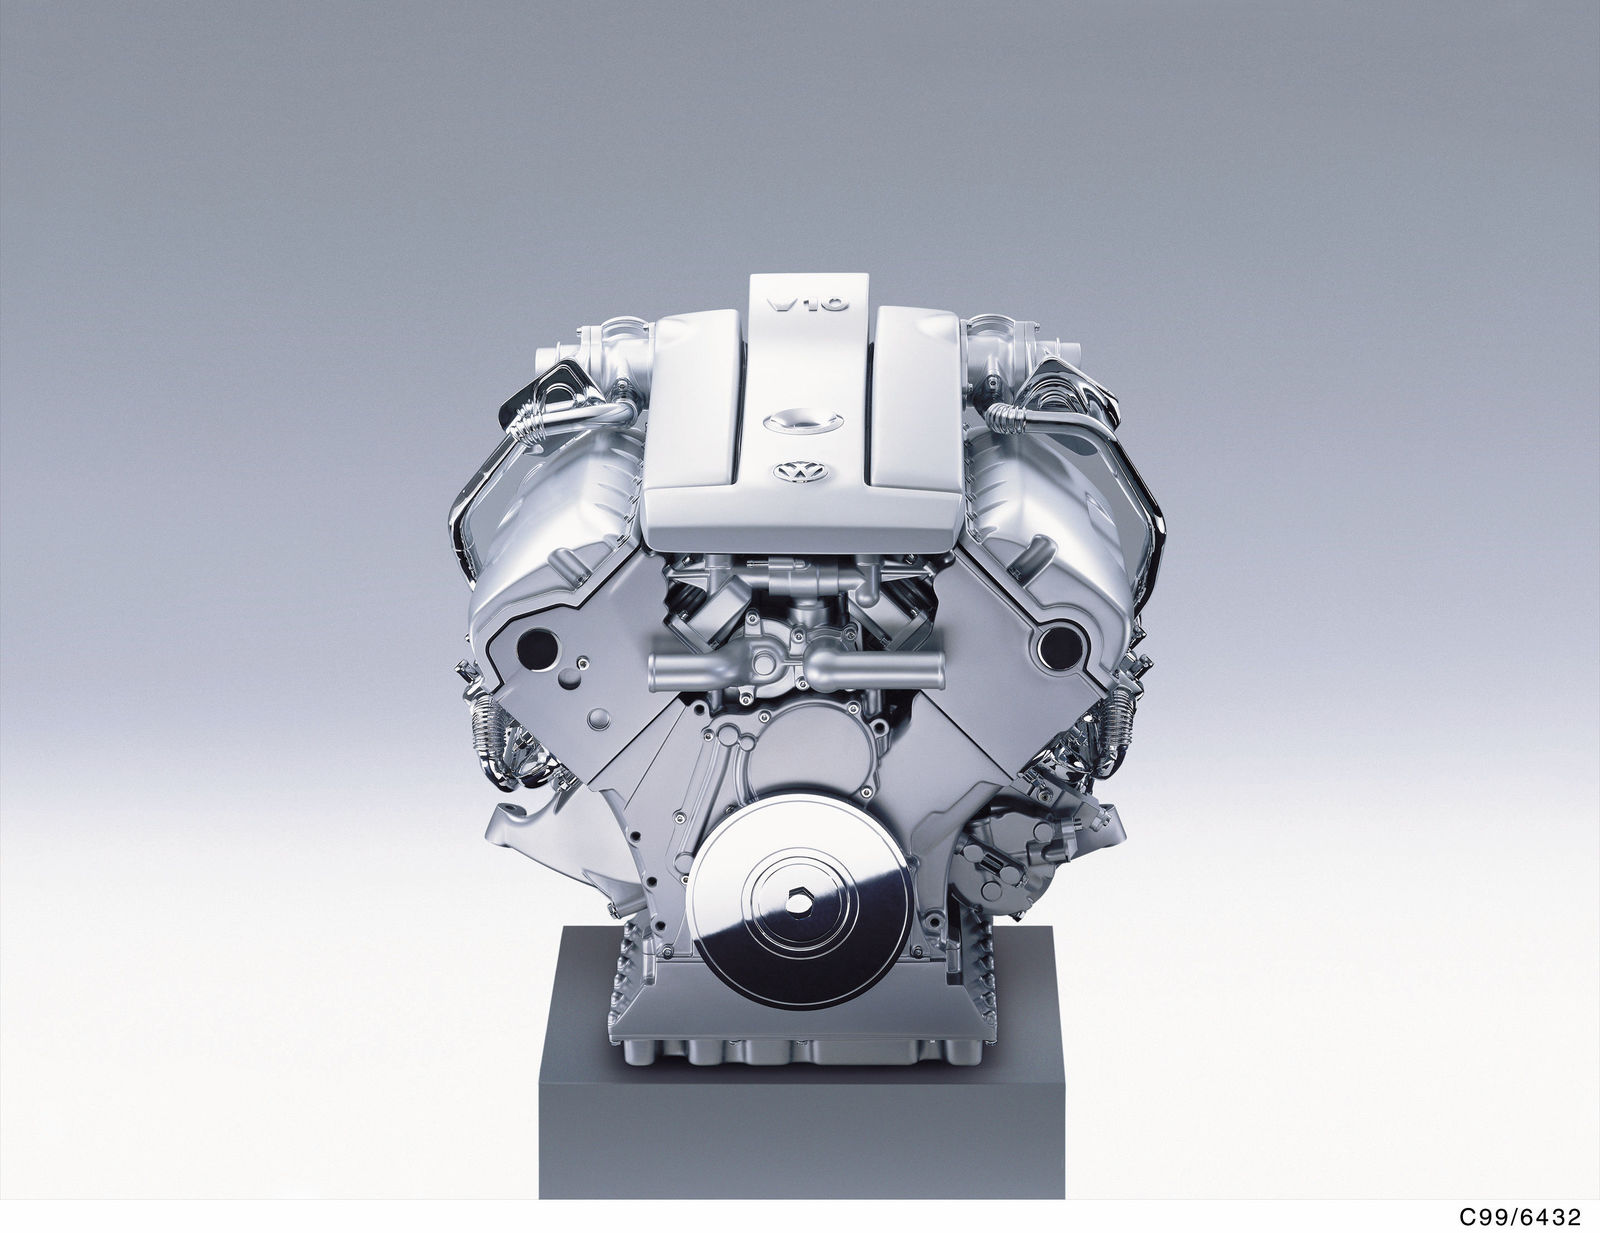 Workshop Diesel Technology Concept D V10-TDI-Motor